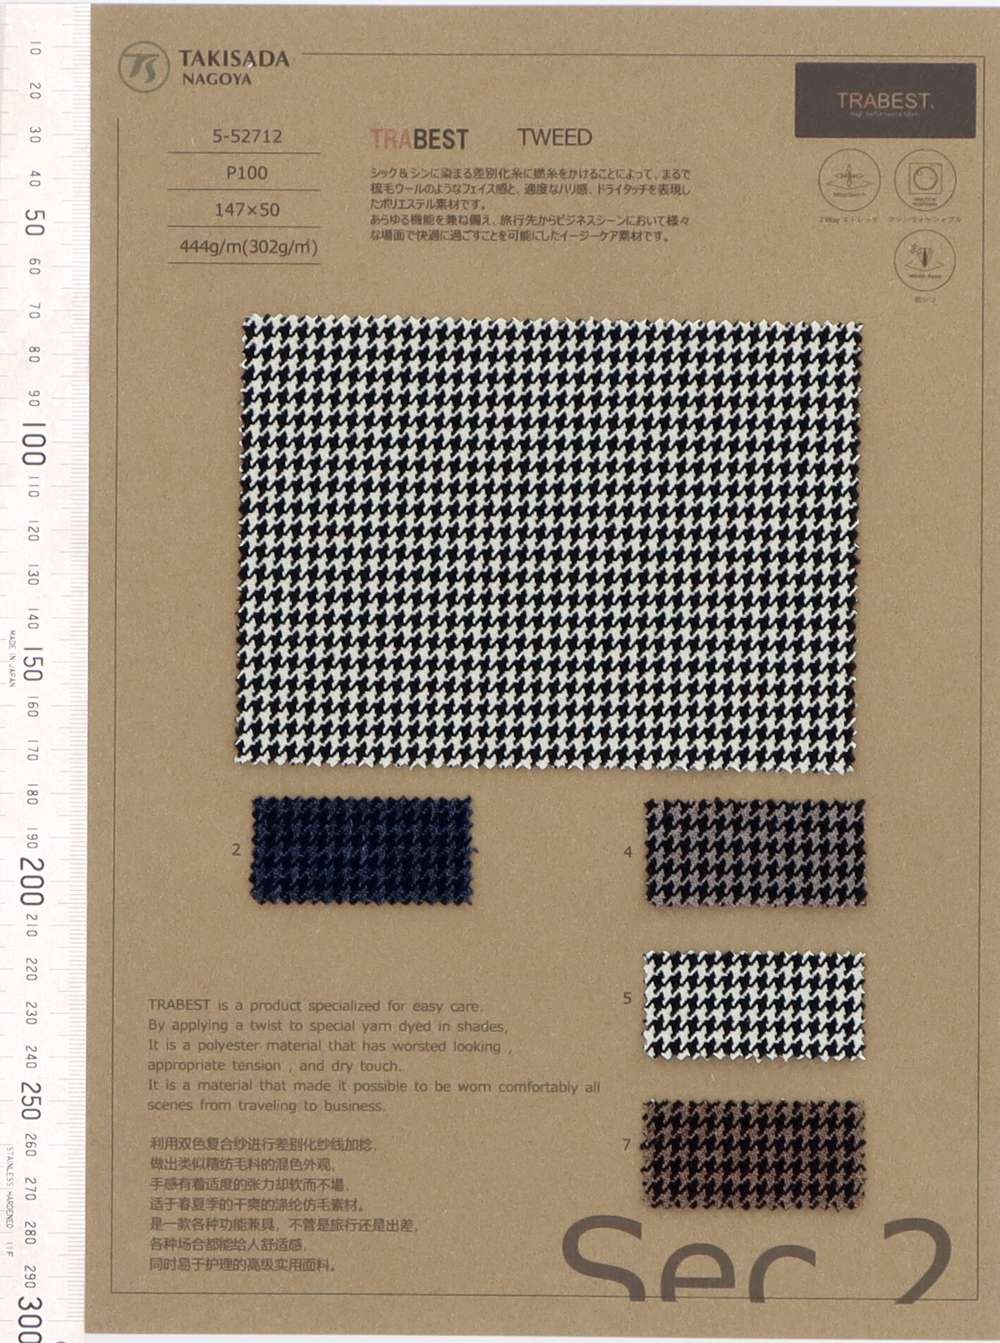 5-52712 TRABEST TWEED Soft Touch Melange Houndstooth[Textile / Fabric] Takisada Nagoya